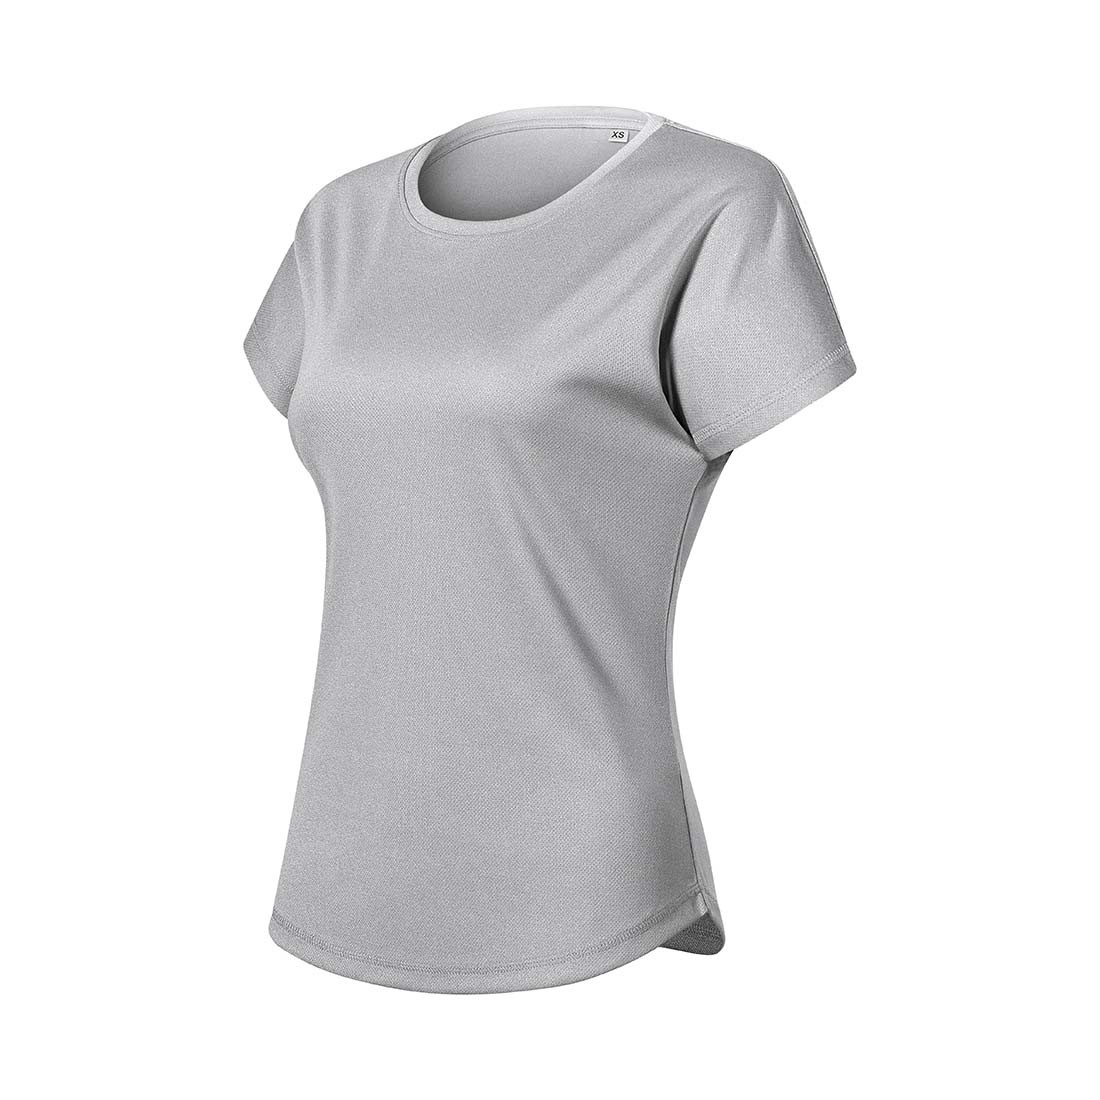 Camiseta mujer CHANCE - Ropa de protección